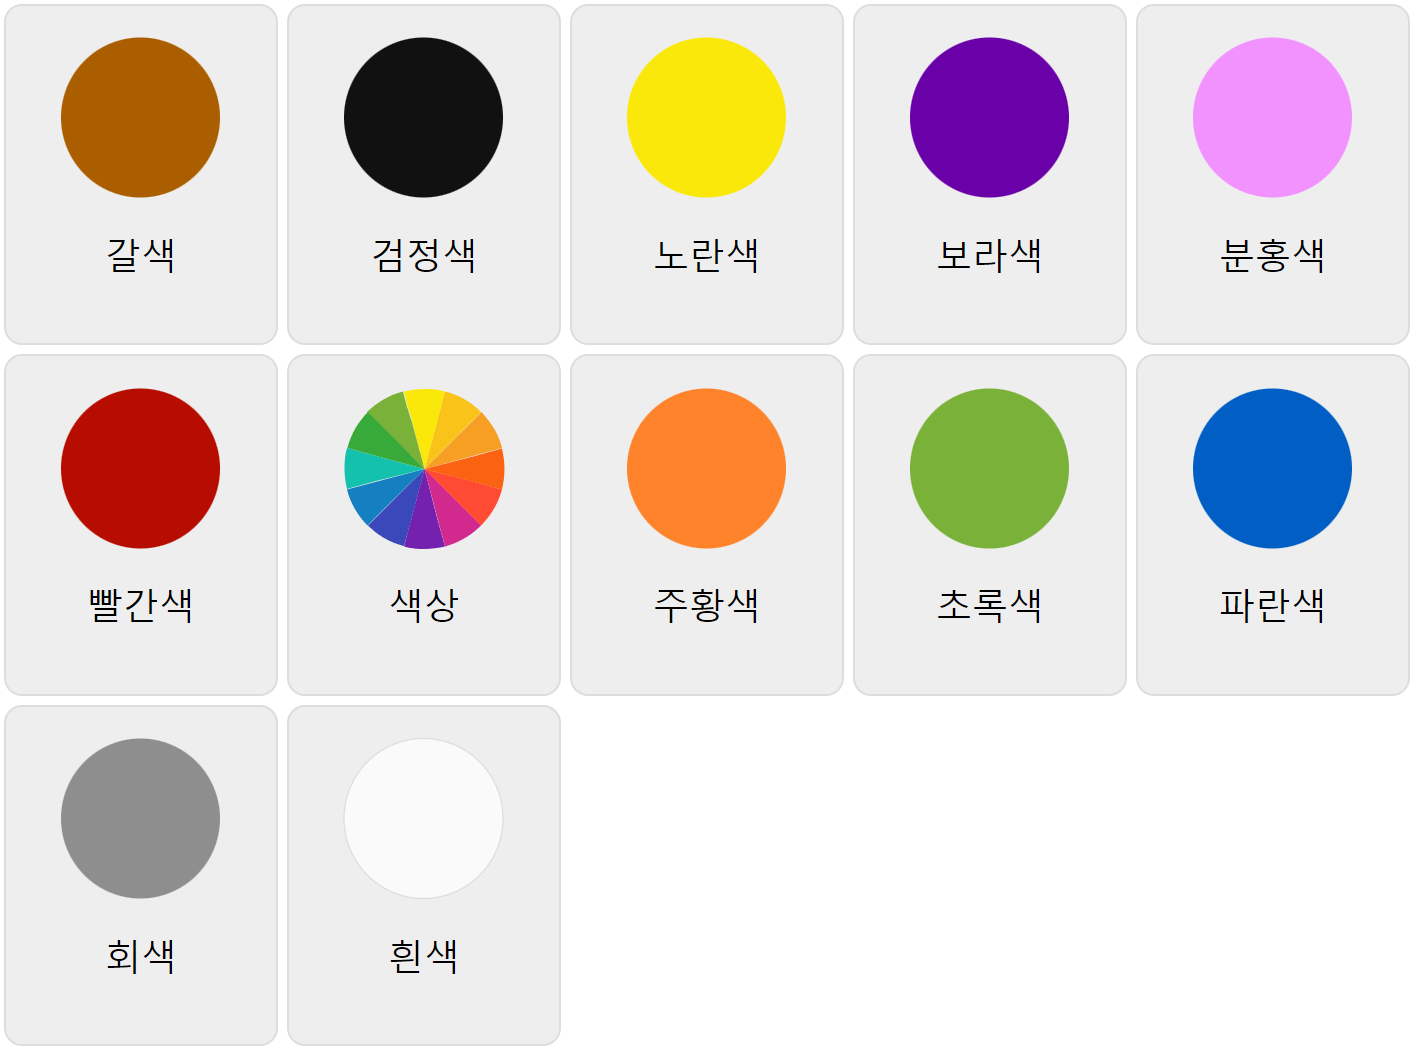 Colors in Korean